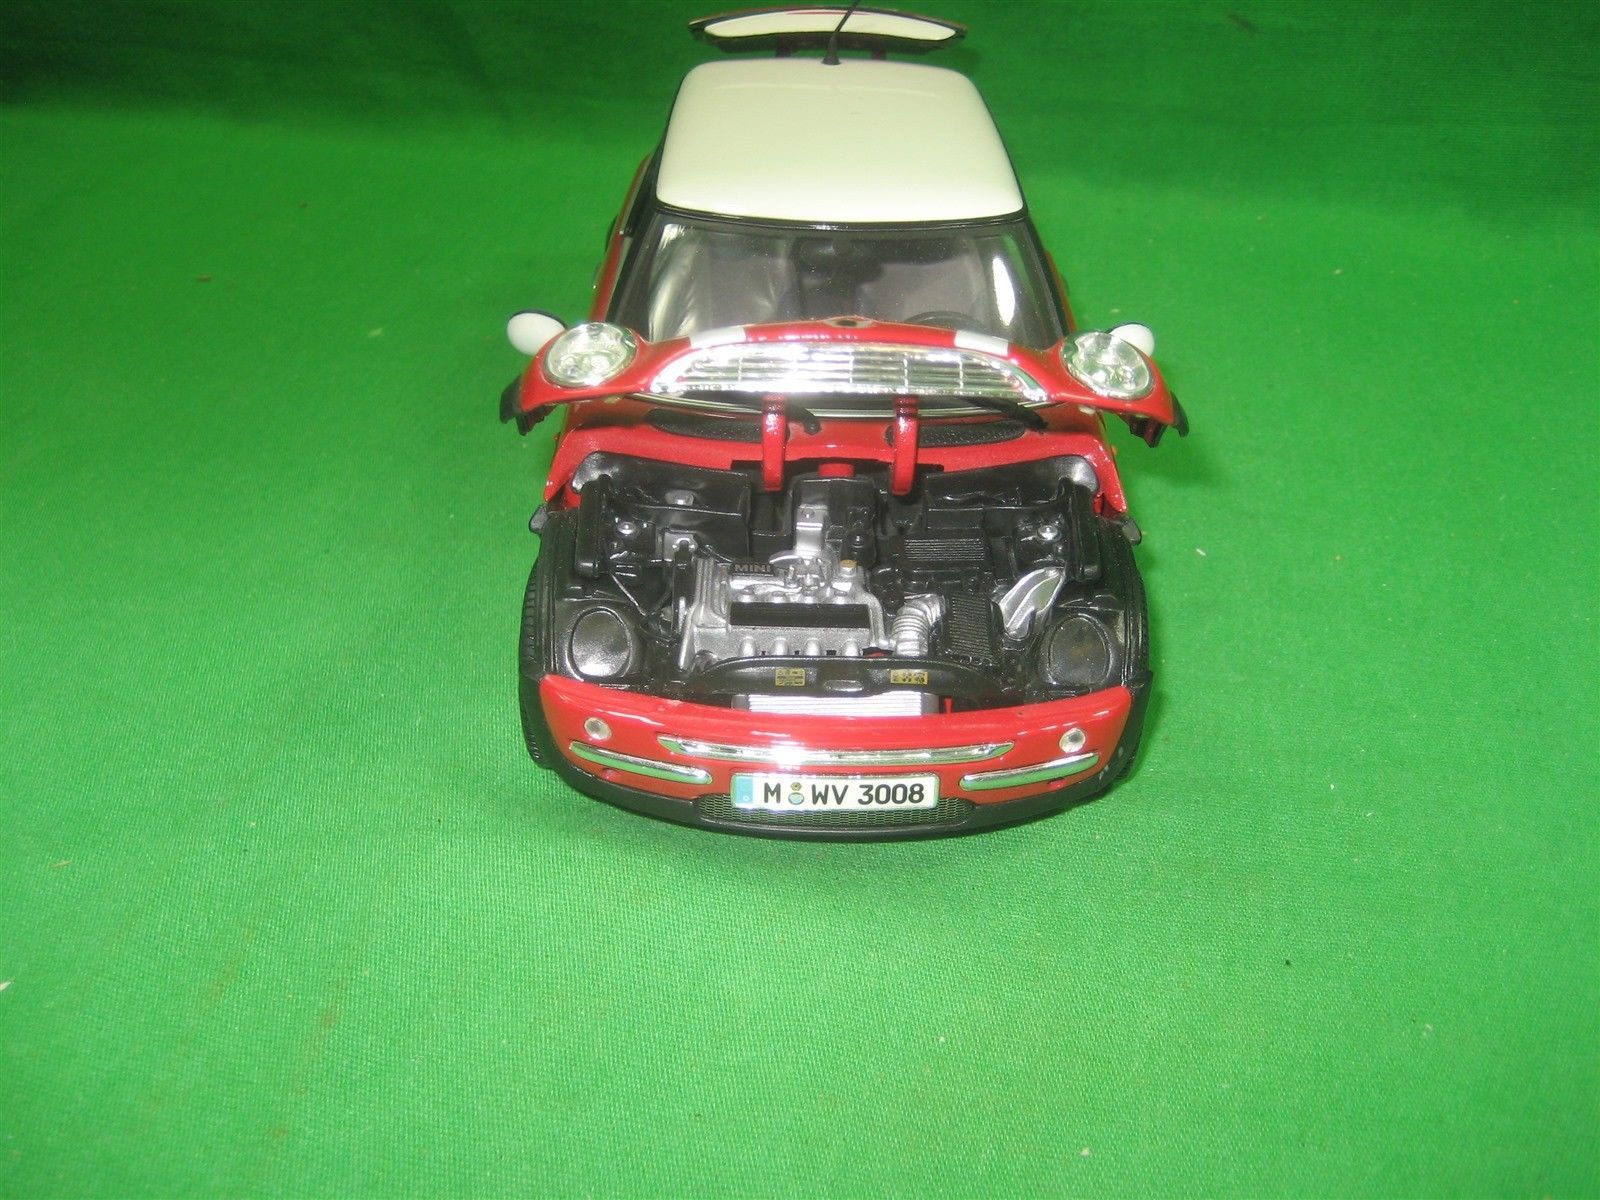 Maisto 2 Door Hard Top Mini Cooper Toy Car And 28 Similar Items Images, Photos, Reviews